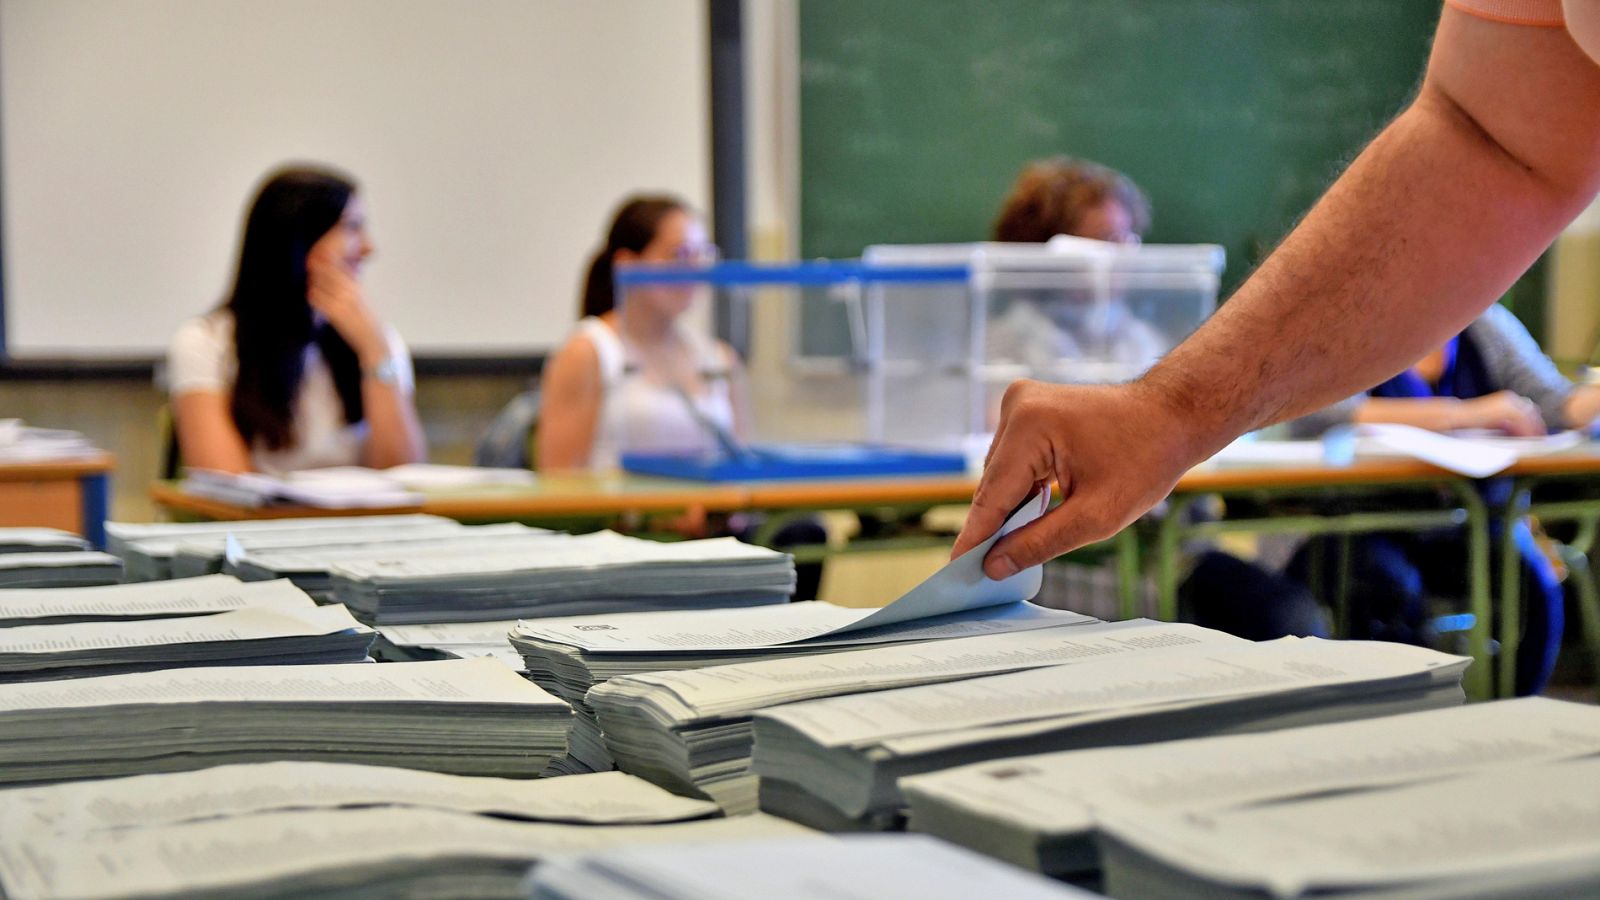 Elecciones 26M: Una incidencia en Parla obliga a constituirse una mesa 45 minutos tarde - RTVE.es